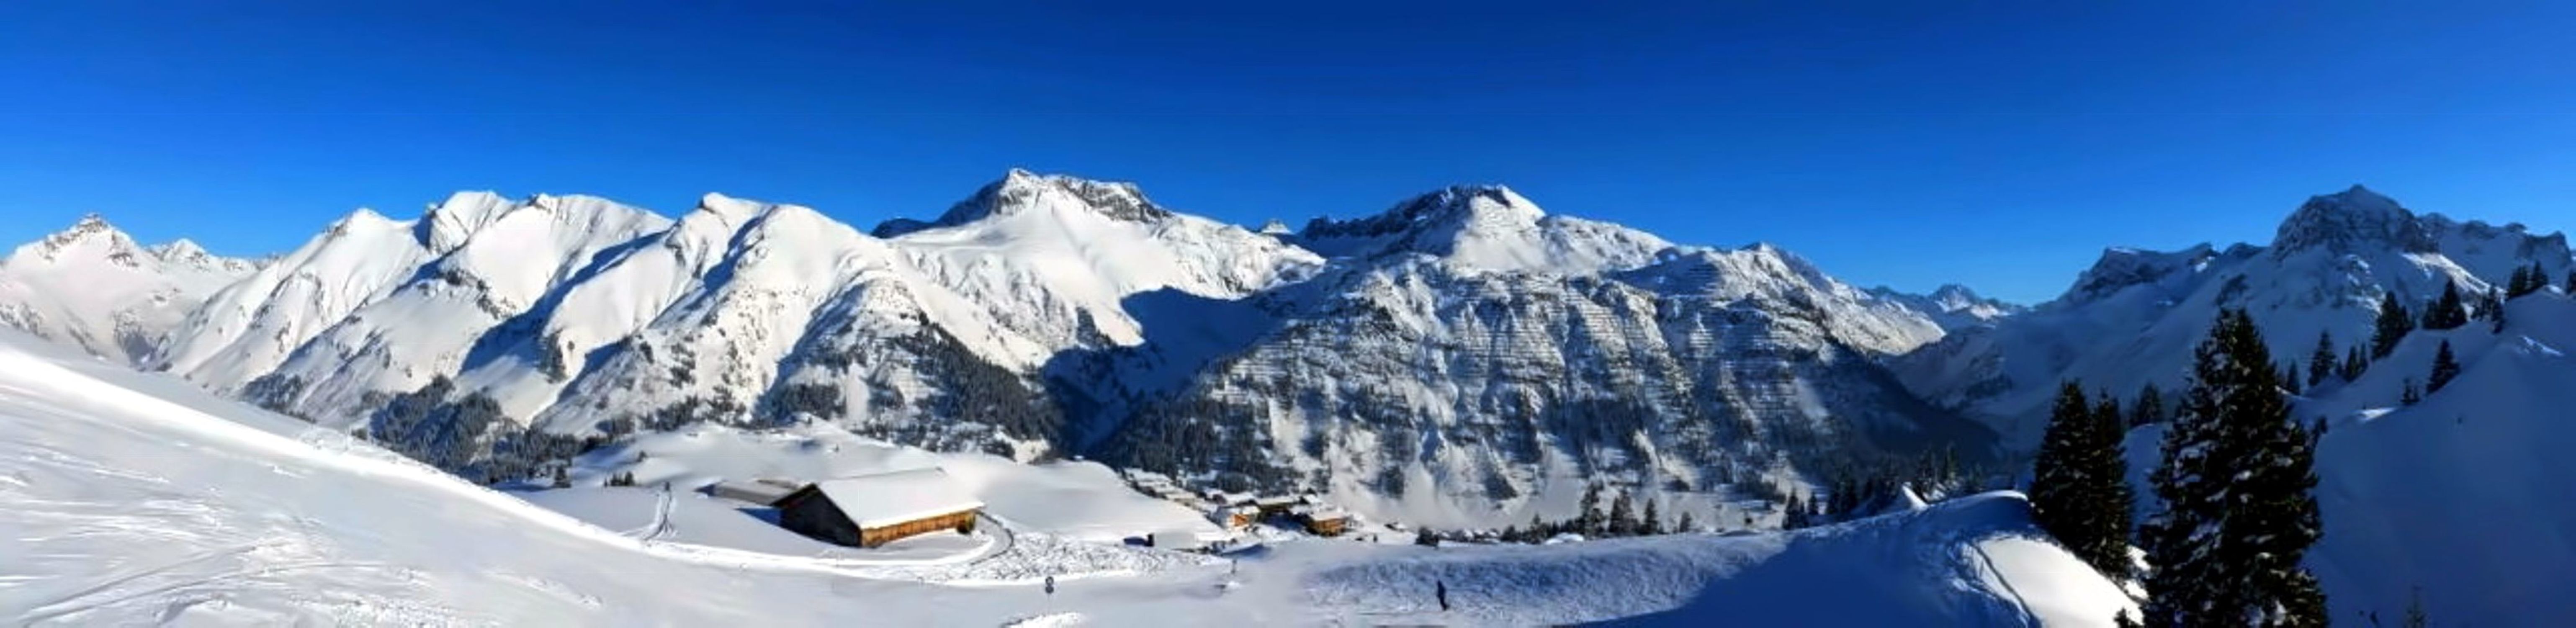 Bild mit Berge, Winter, Schnee, Österreich, Alpen, Vorarlberg, Panorama, Landschaft und Natur, Lech, Berggipfel, Wintersport